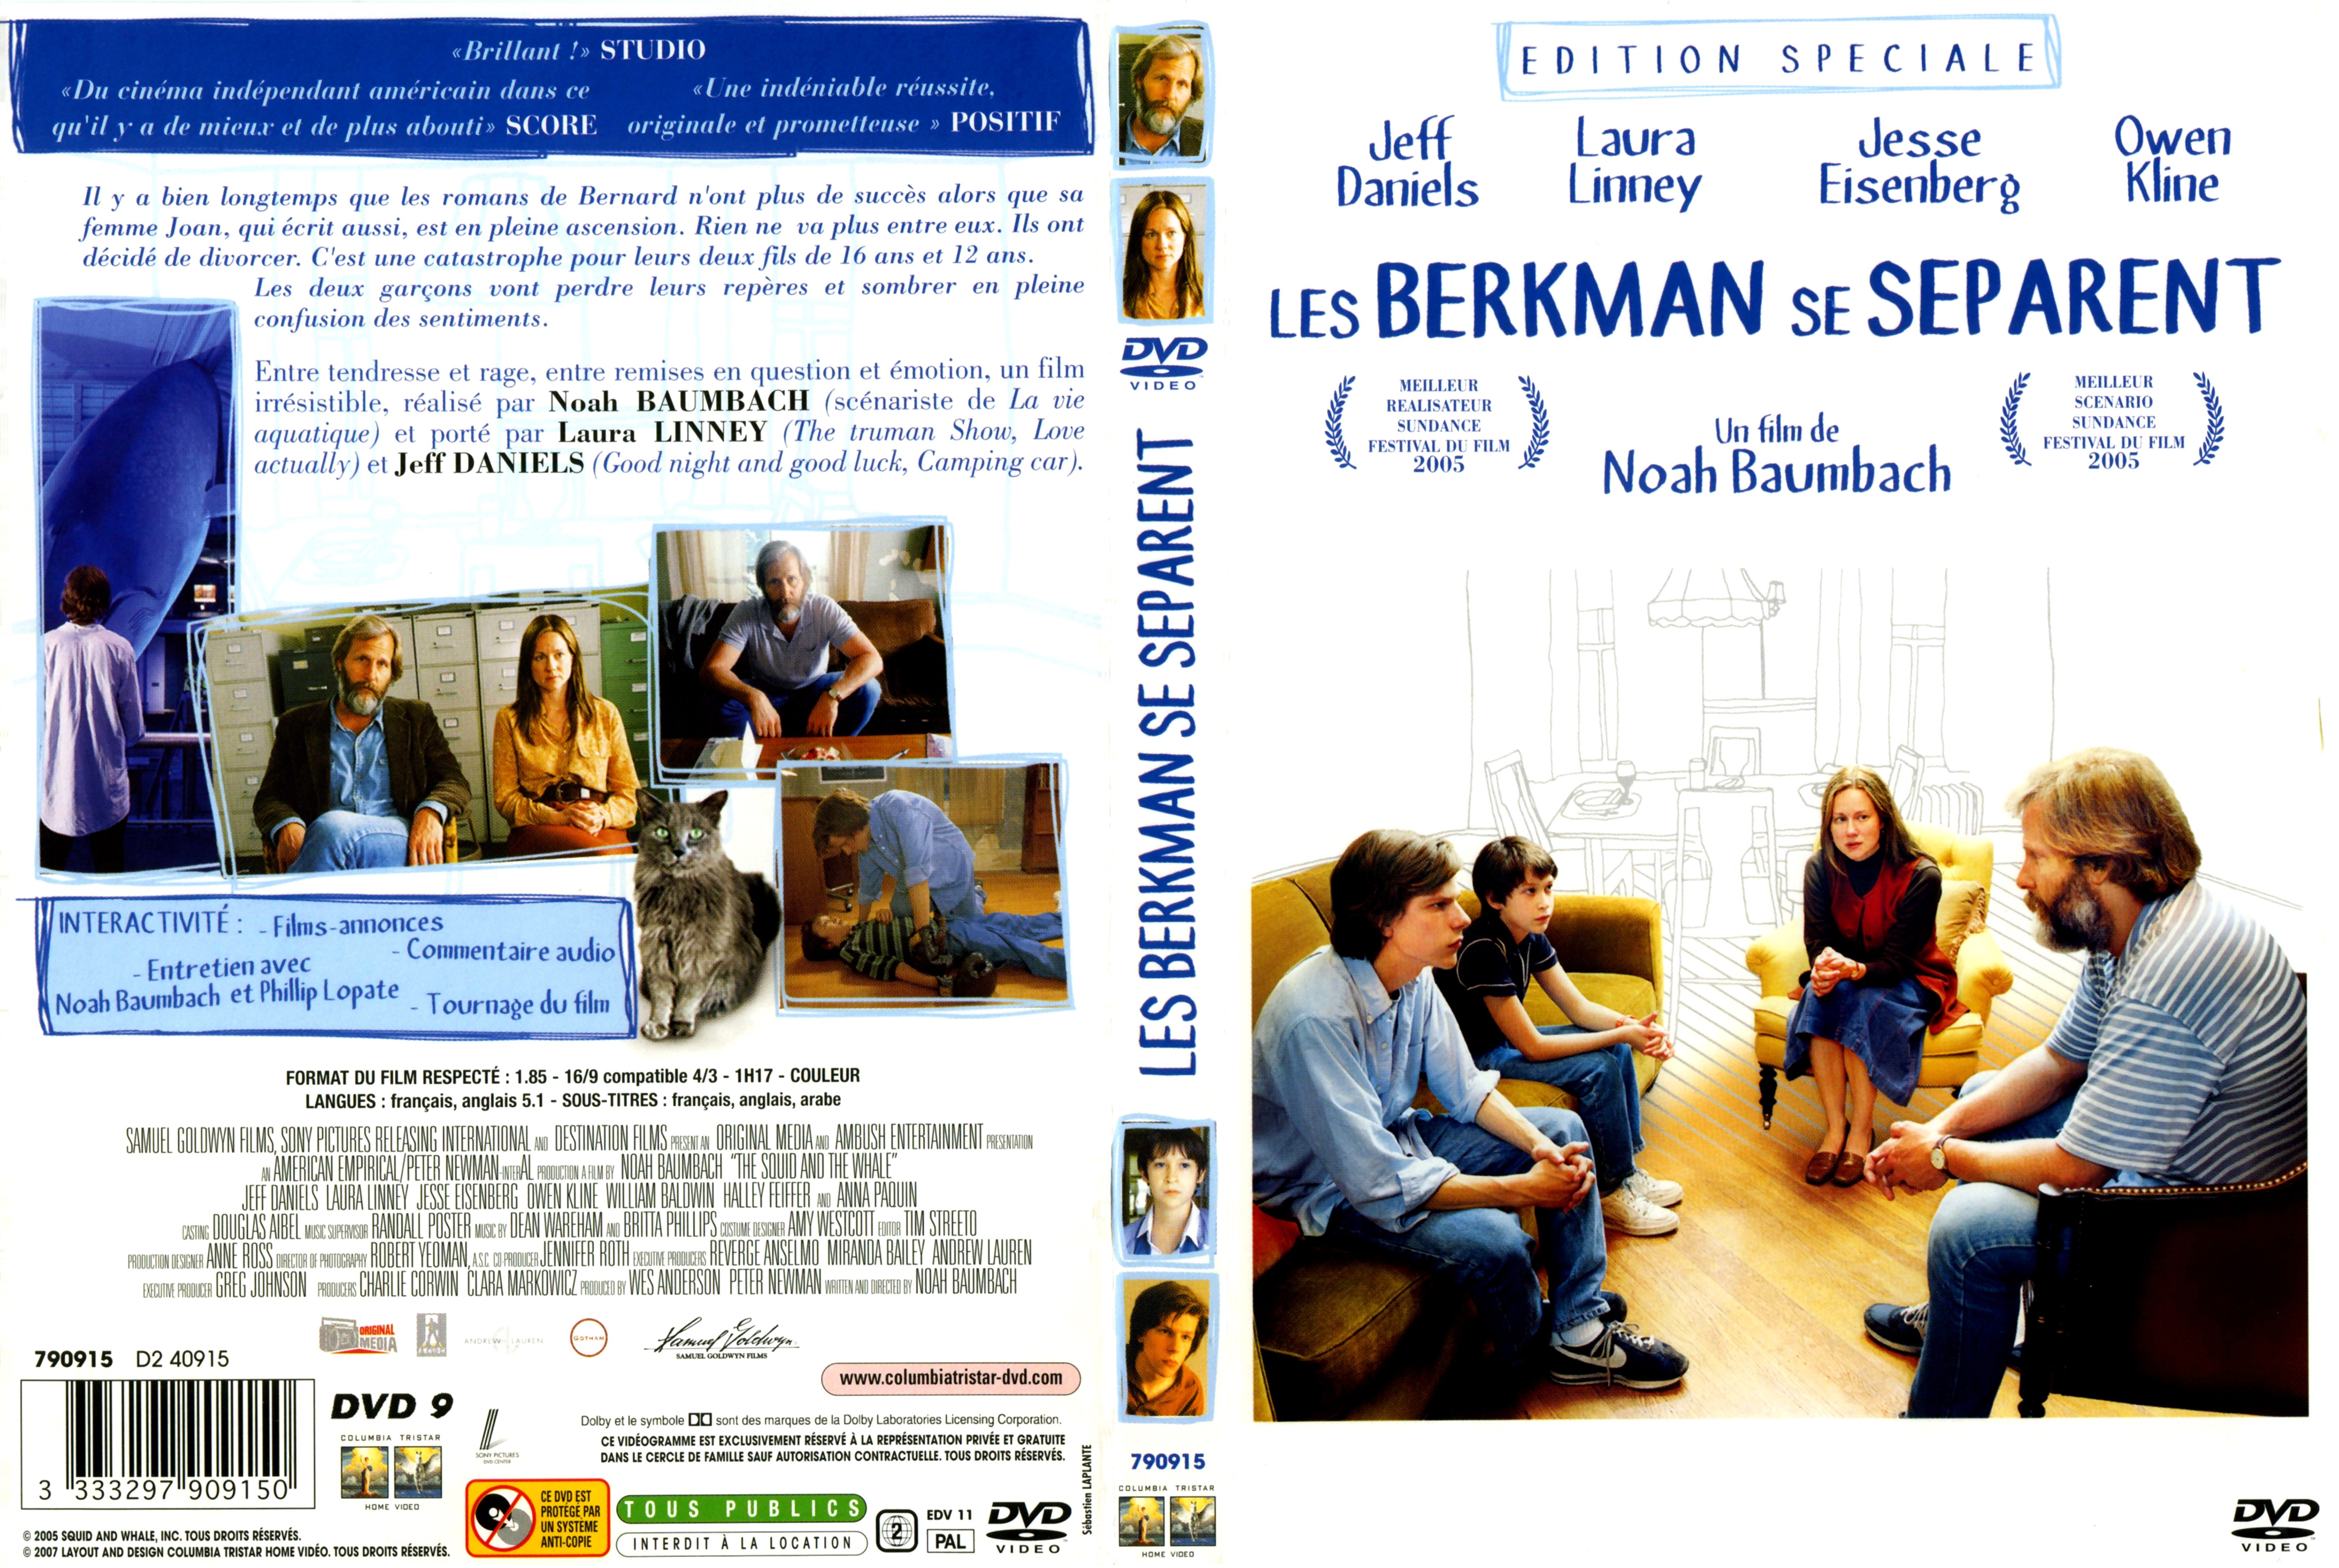 Jaquette DVD Les Berkman se sparent